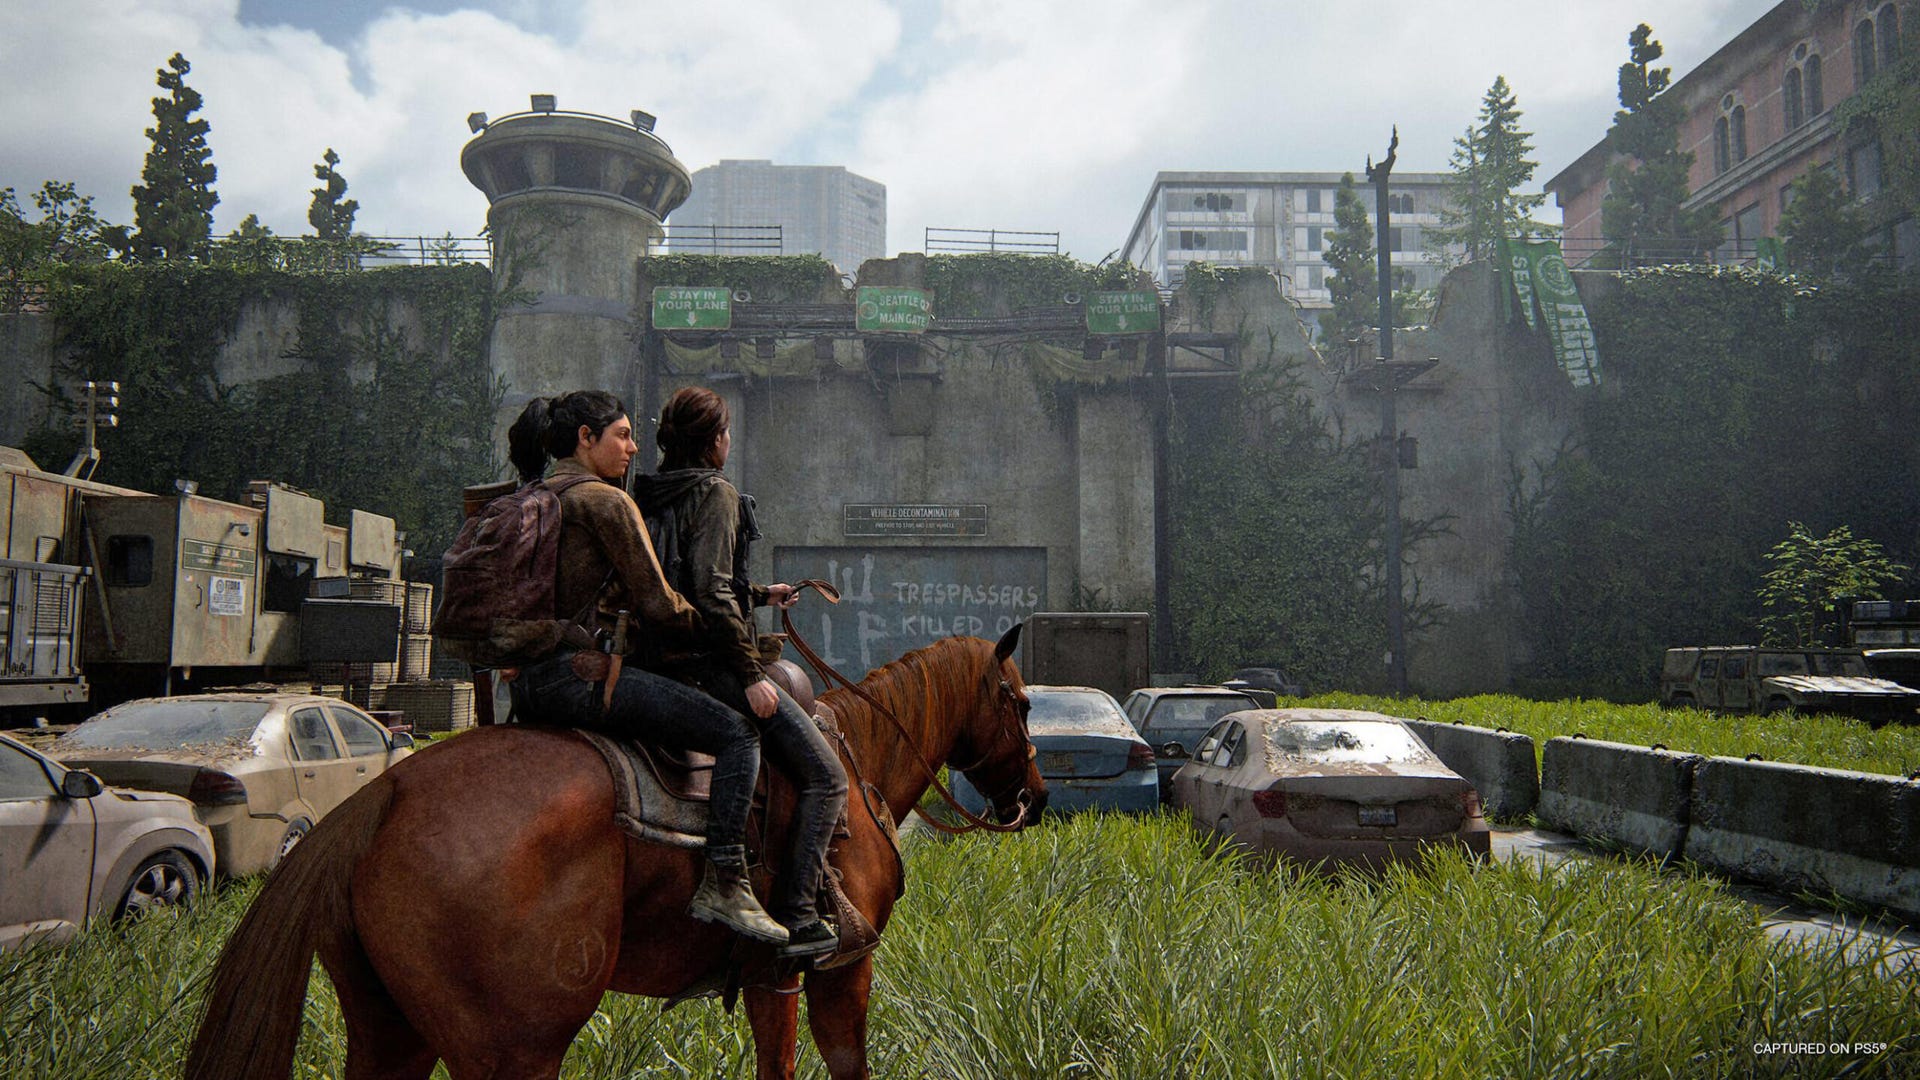 Sony zwraca pieniądze za preordery The Last of Us 2 Remastered posiadaczom wersji PS4